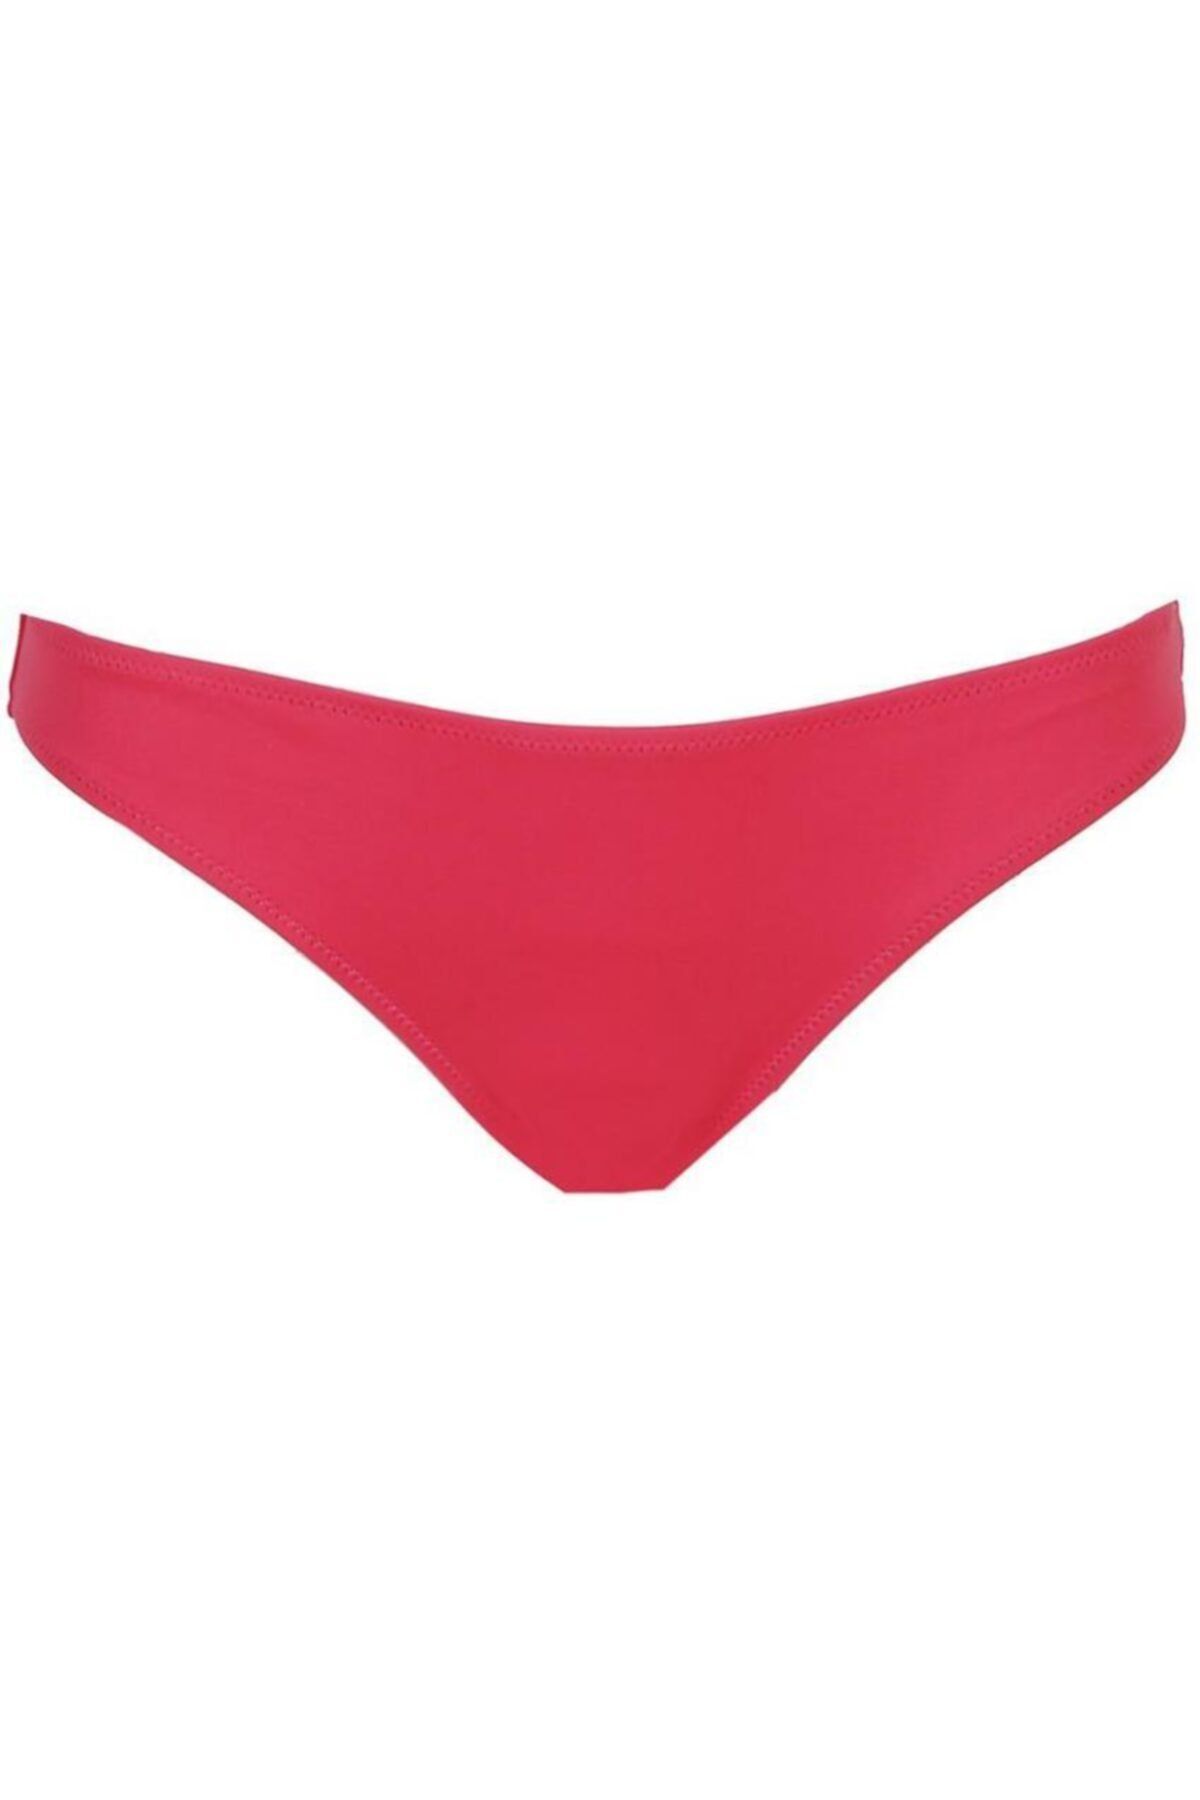 FIFTH SENSE Kadın Kırmızı Bikini Altı